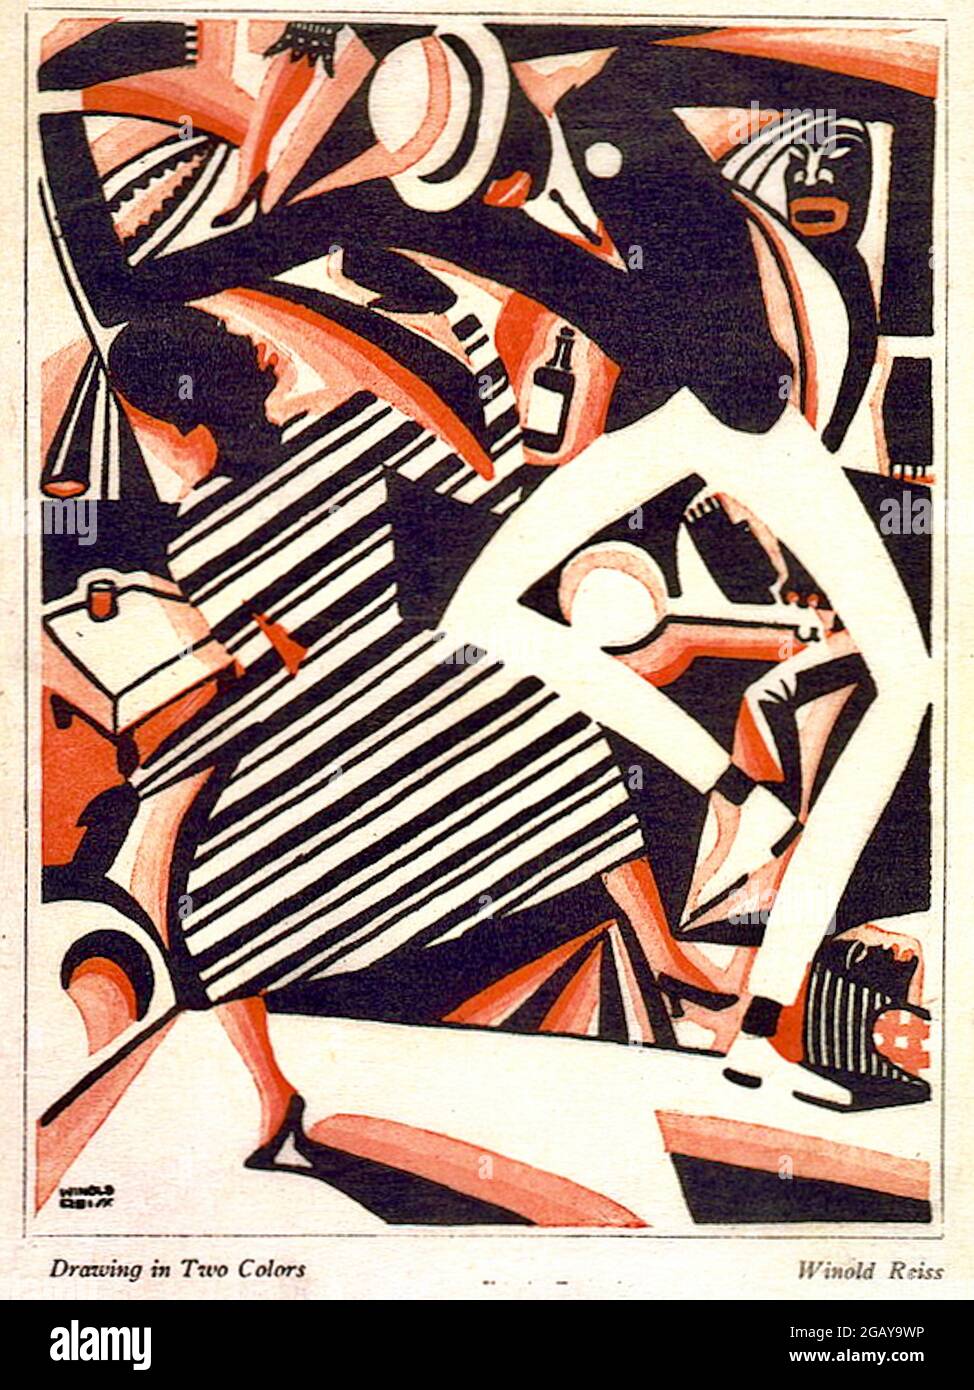 Winold Reiss - dessin en deux couleurs -1915 - dessin en deux couleurs - Harlem Jazz - Art déco Banque D'Images